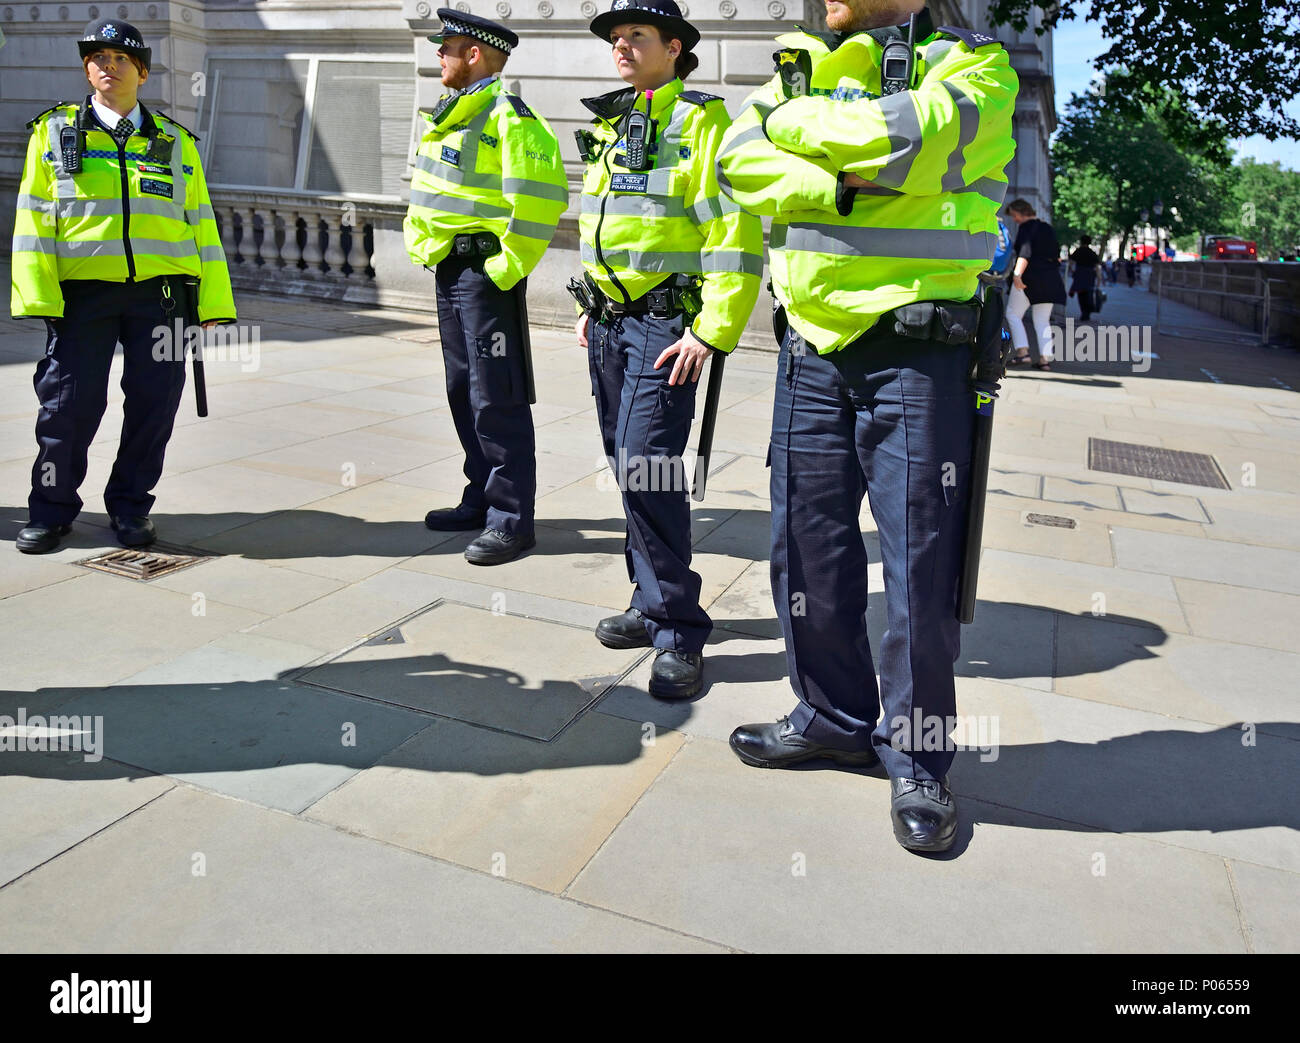 Des agents de police de vestes Hi-Vis à Whitehall, Westminster, Londres, Angleterre, Royaume-Uni. Banque D'Images